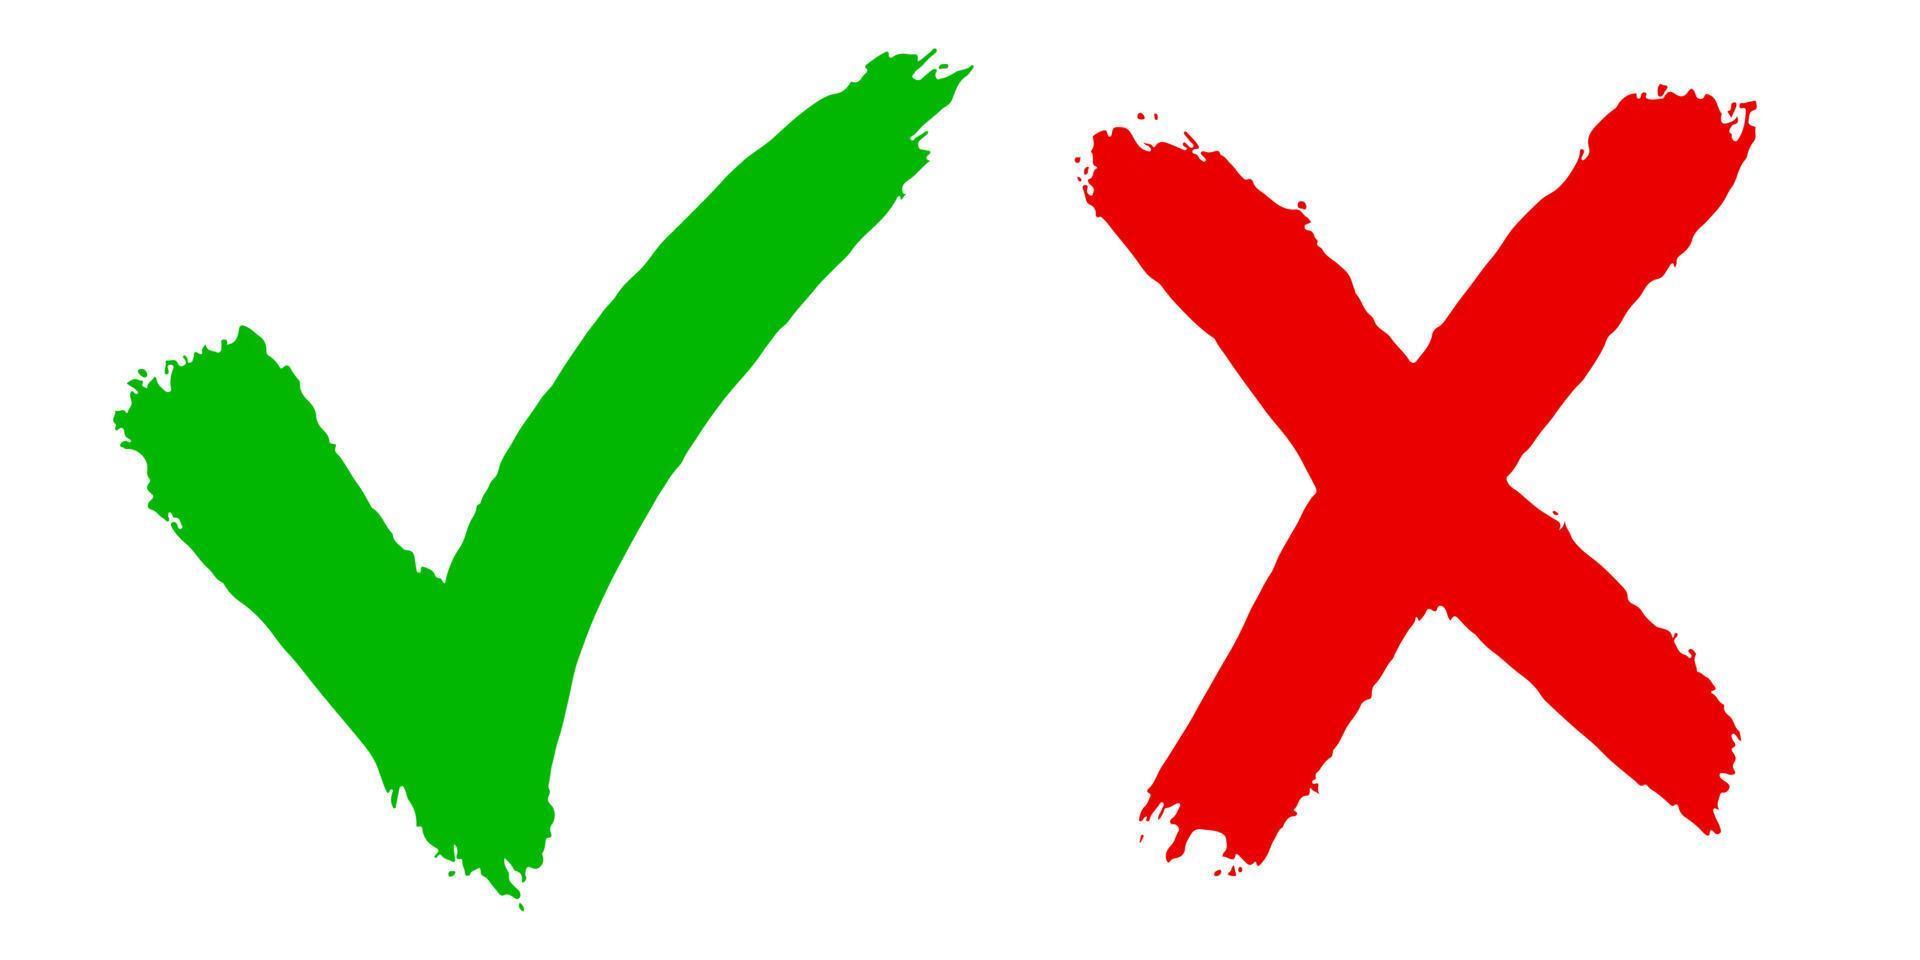 rätt och fel ikon. handritad av grön bock och rött kors isolerad på vit background.vector illustration. vektor